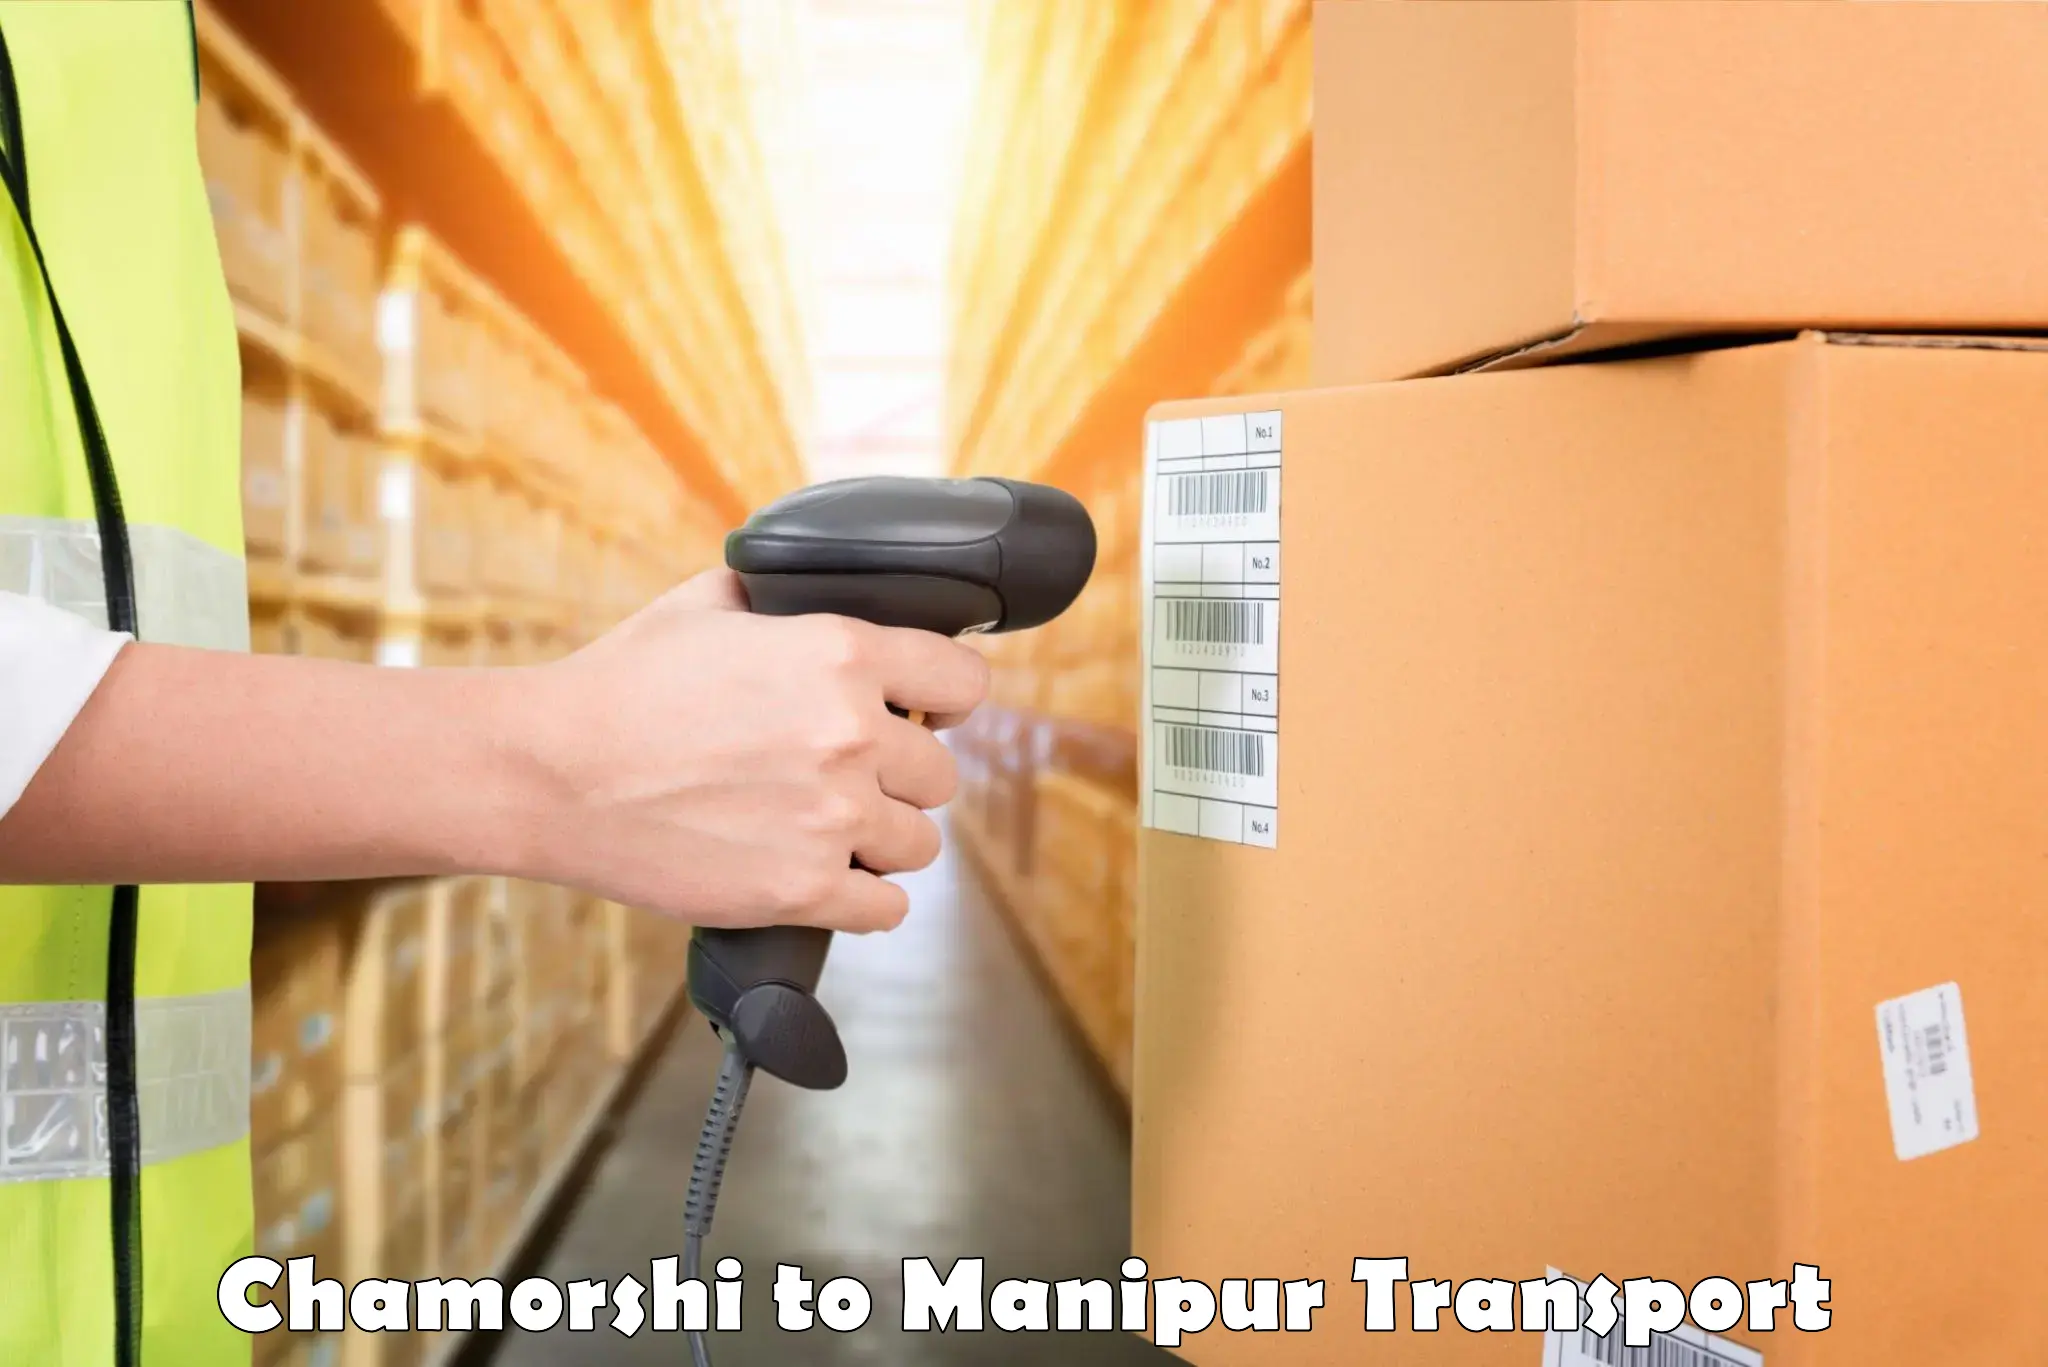 Transport in sharing Chamorshi to Kanti